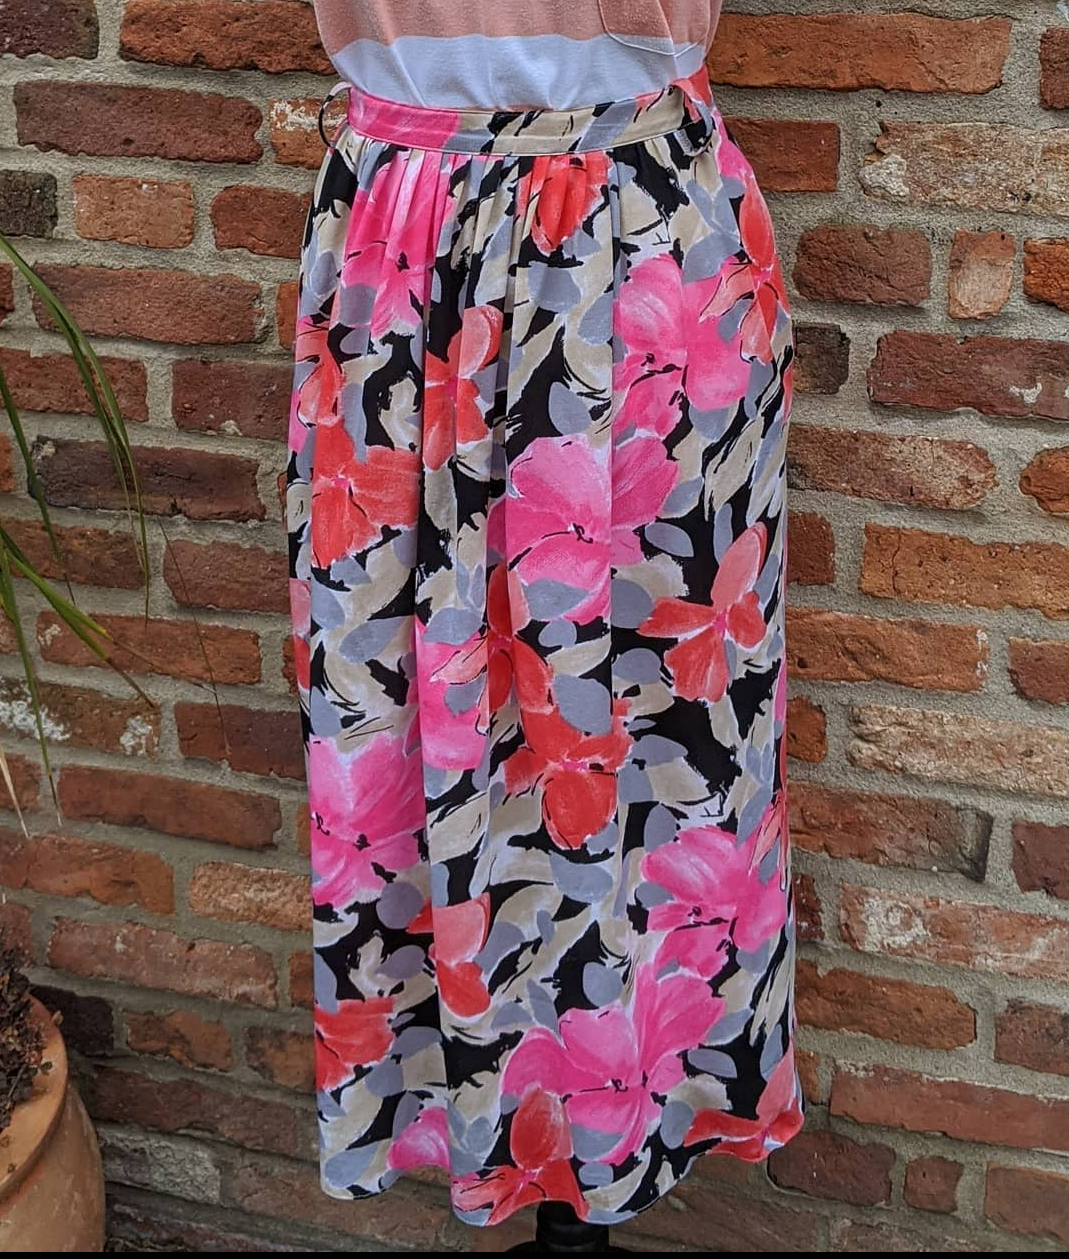 Floral skirt waist 30"